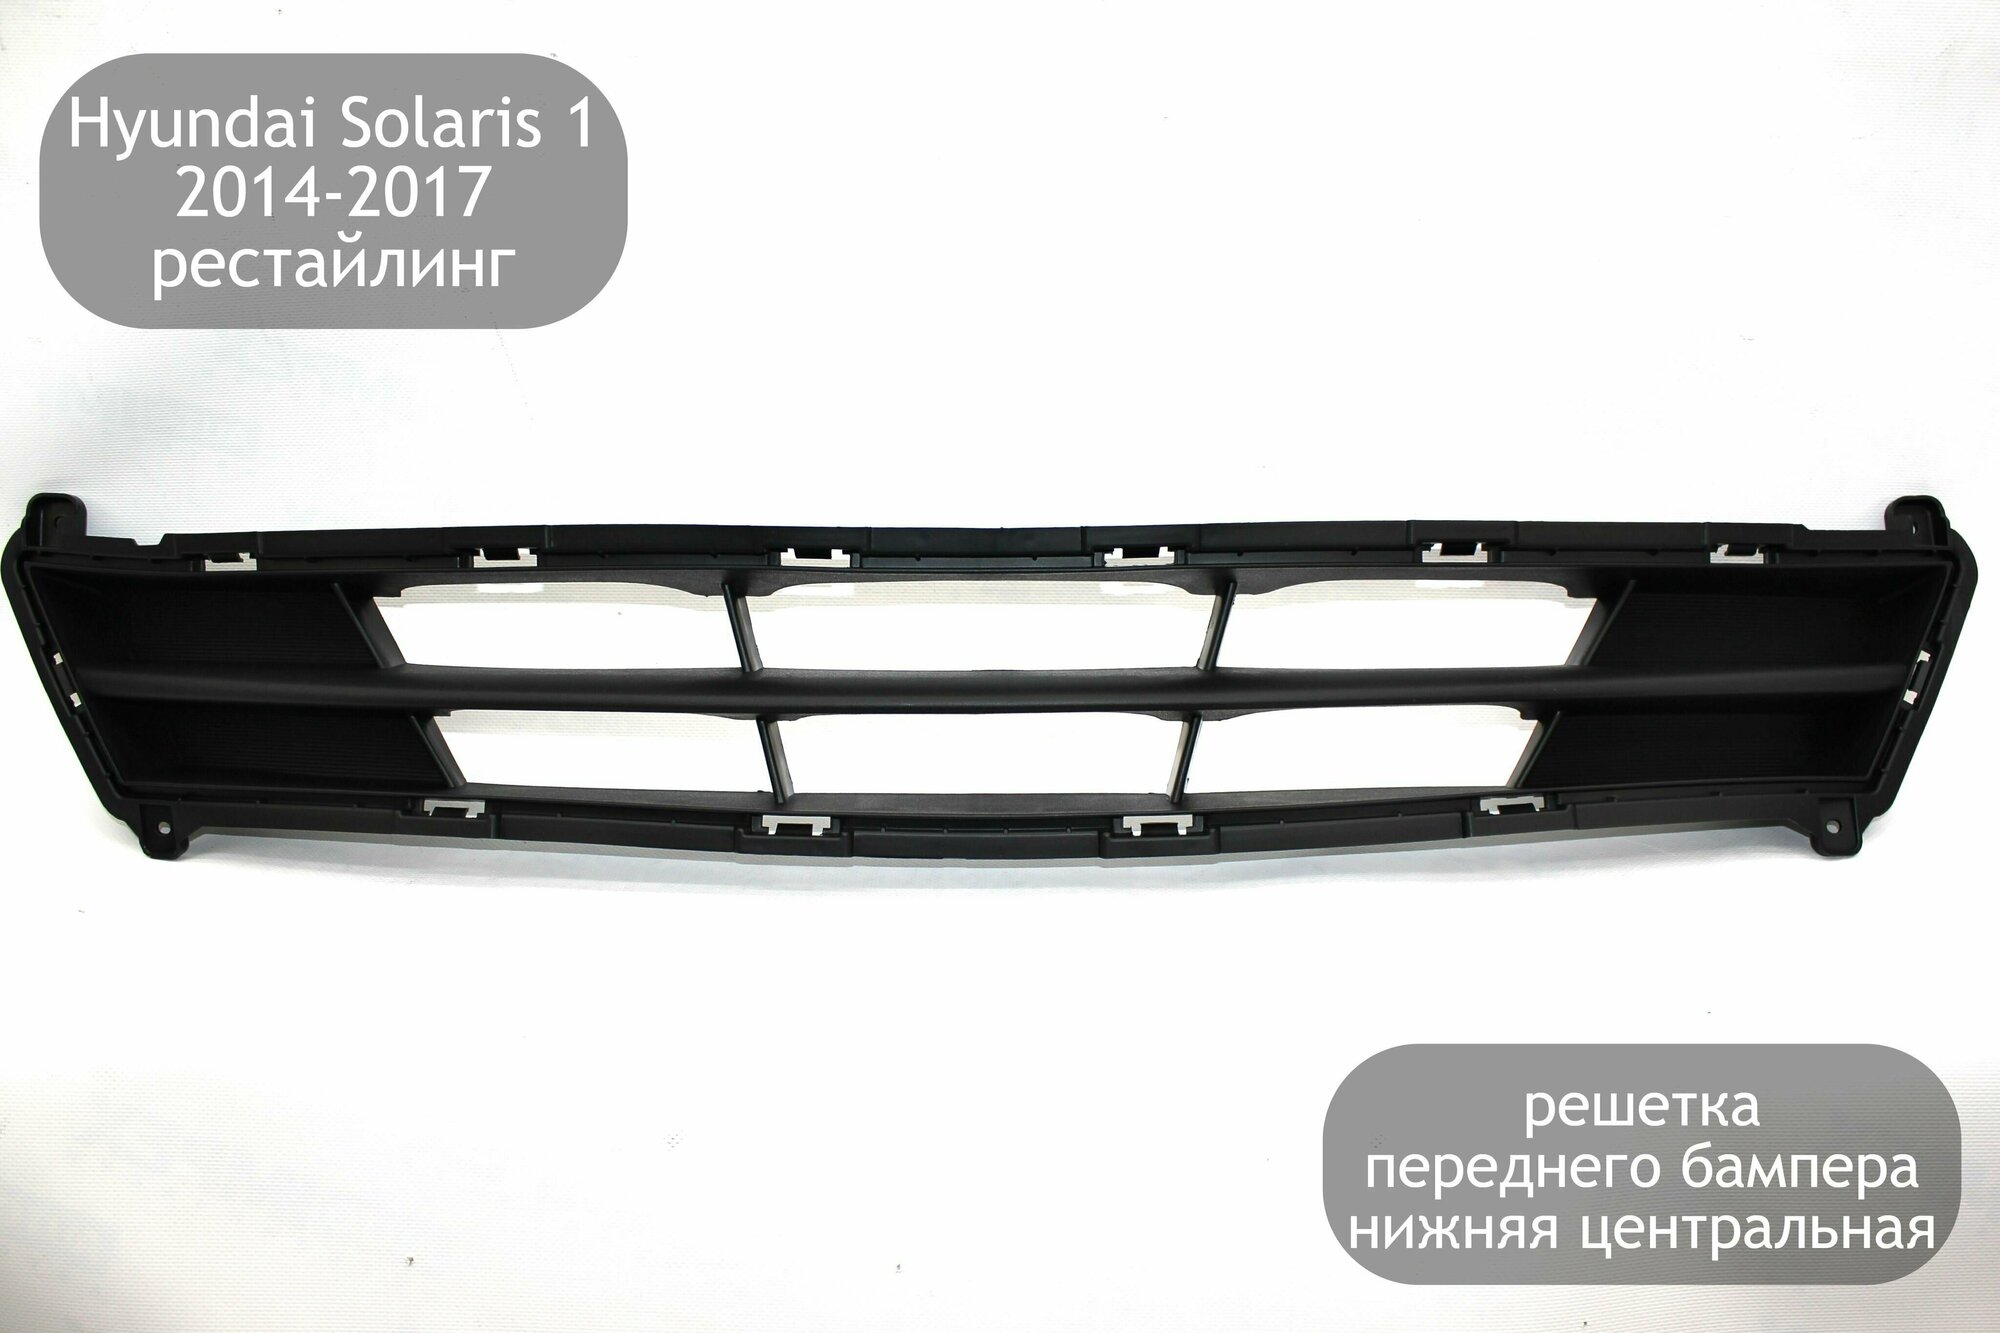 Решетка переднего бампера нижняя центральная для Hyundai Solaris 1 2014-2017 (рестайлинг)